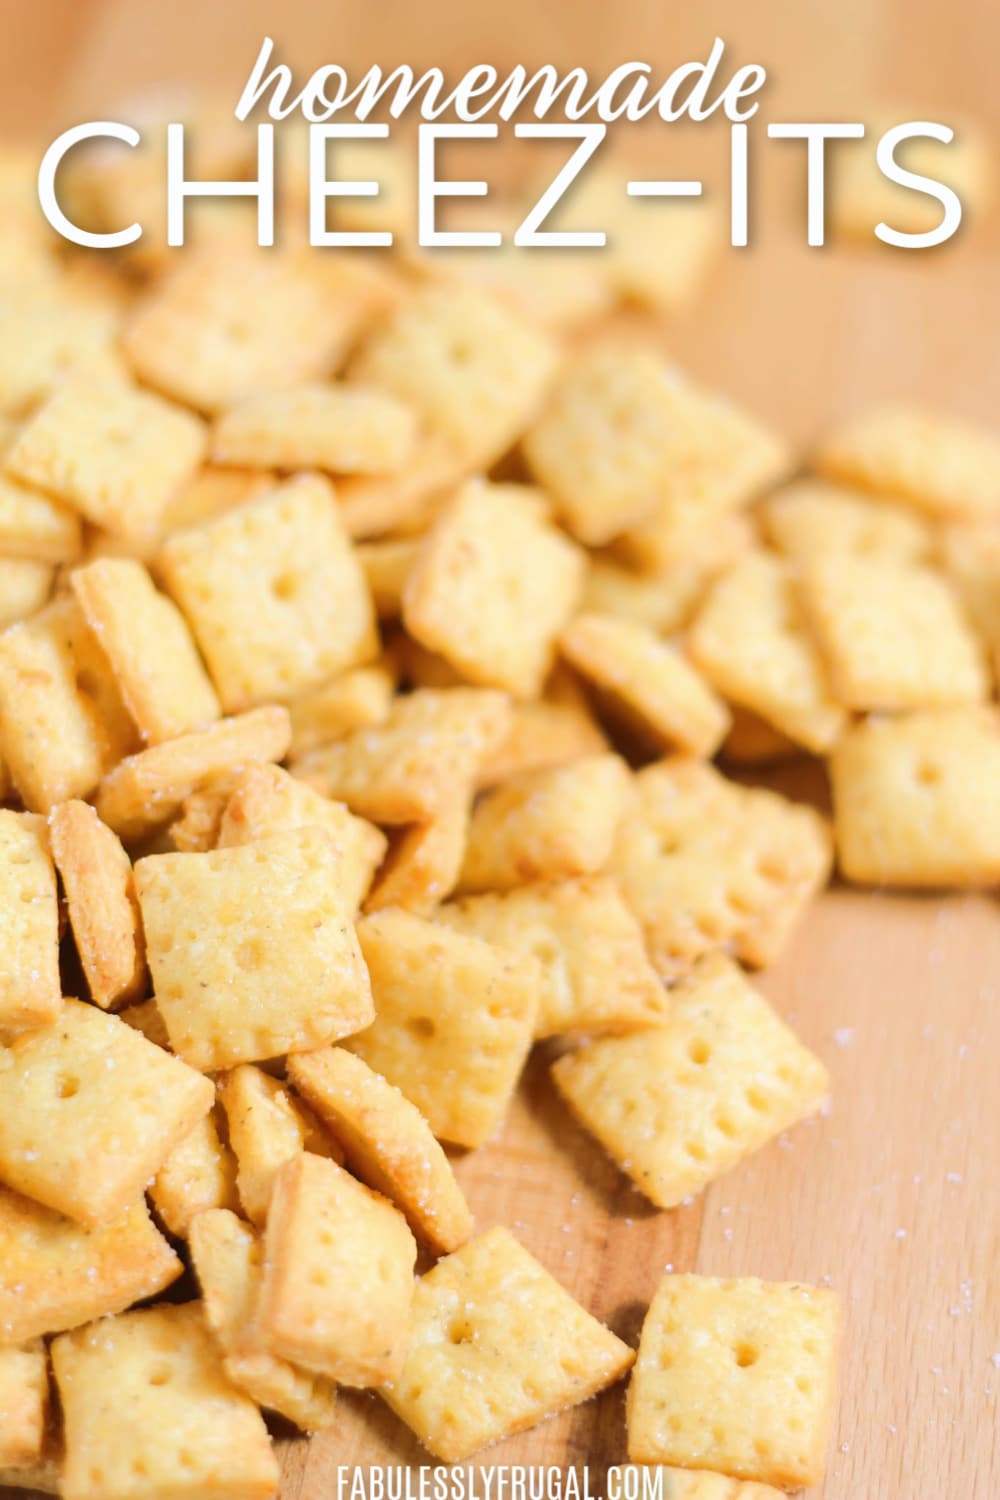 Cheez-it crackers recipe